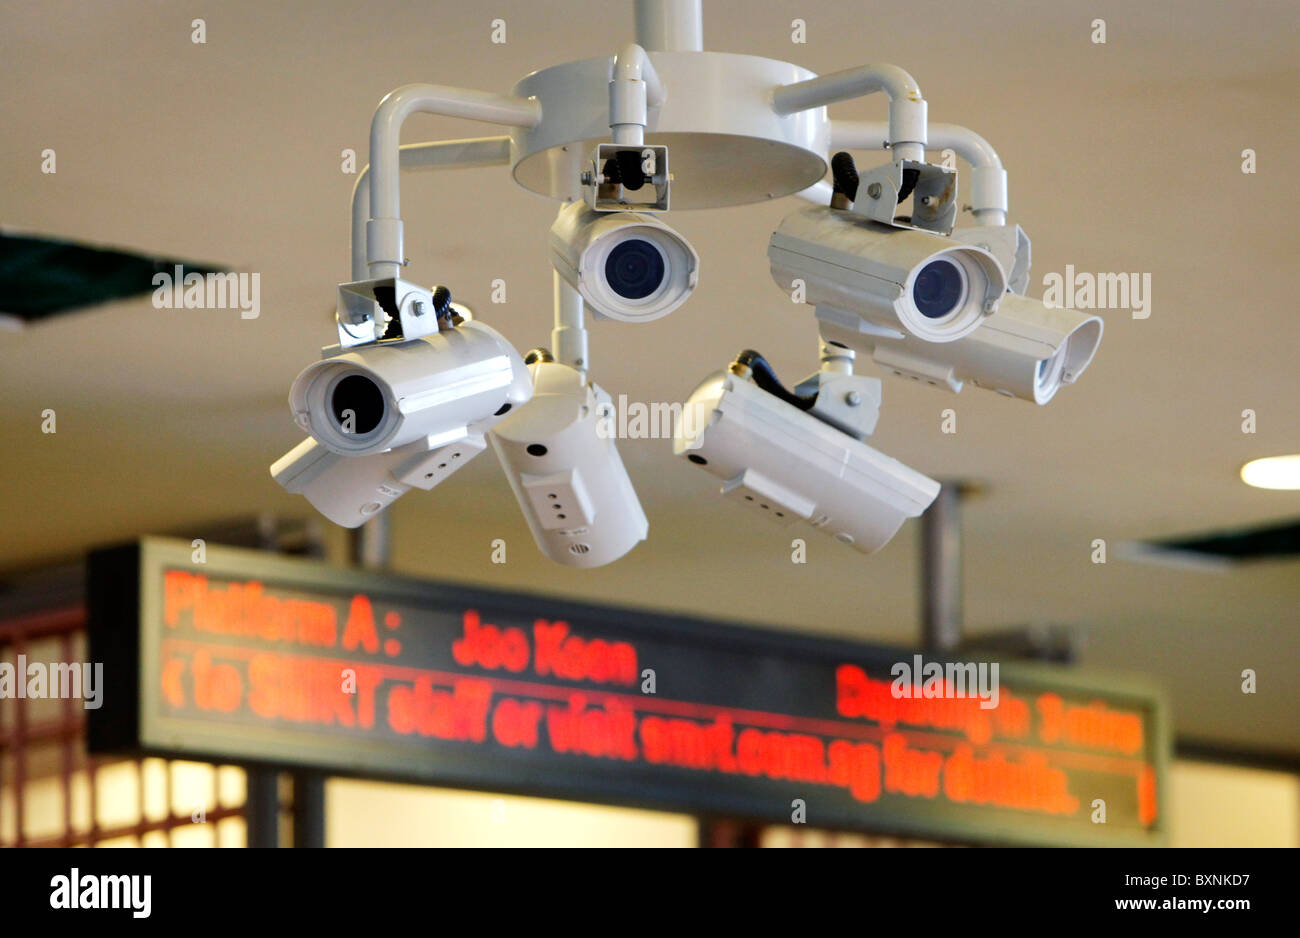 Singapur: cámaras de vigilancia en un MRT (Mass Rapid Transit) estación de metro Foto de stock